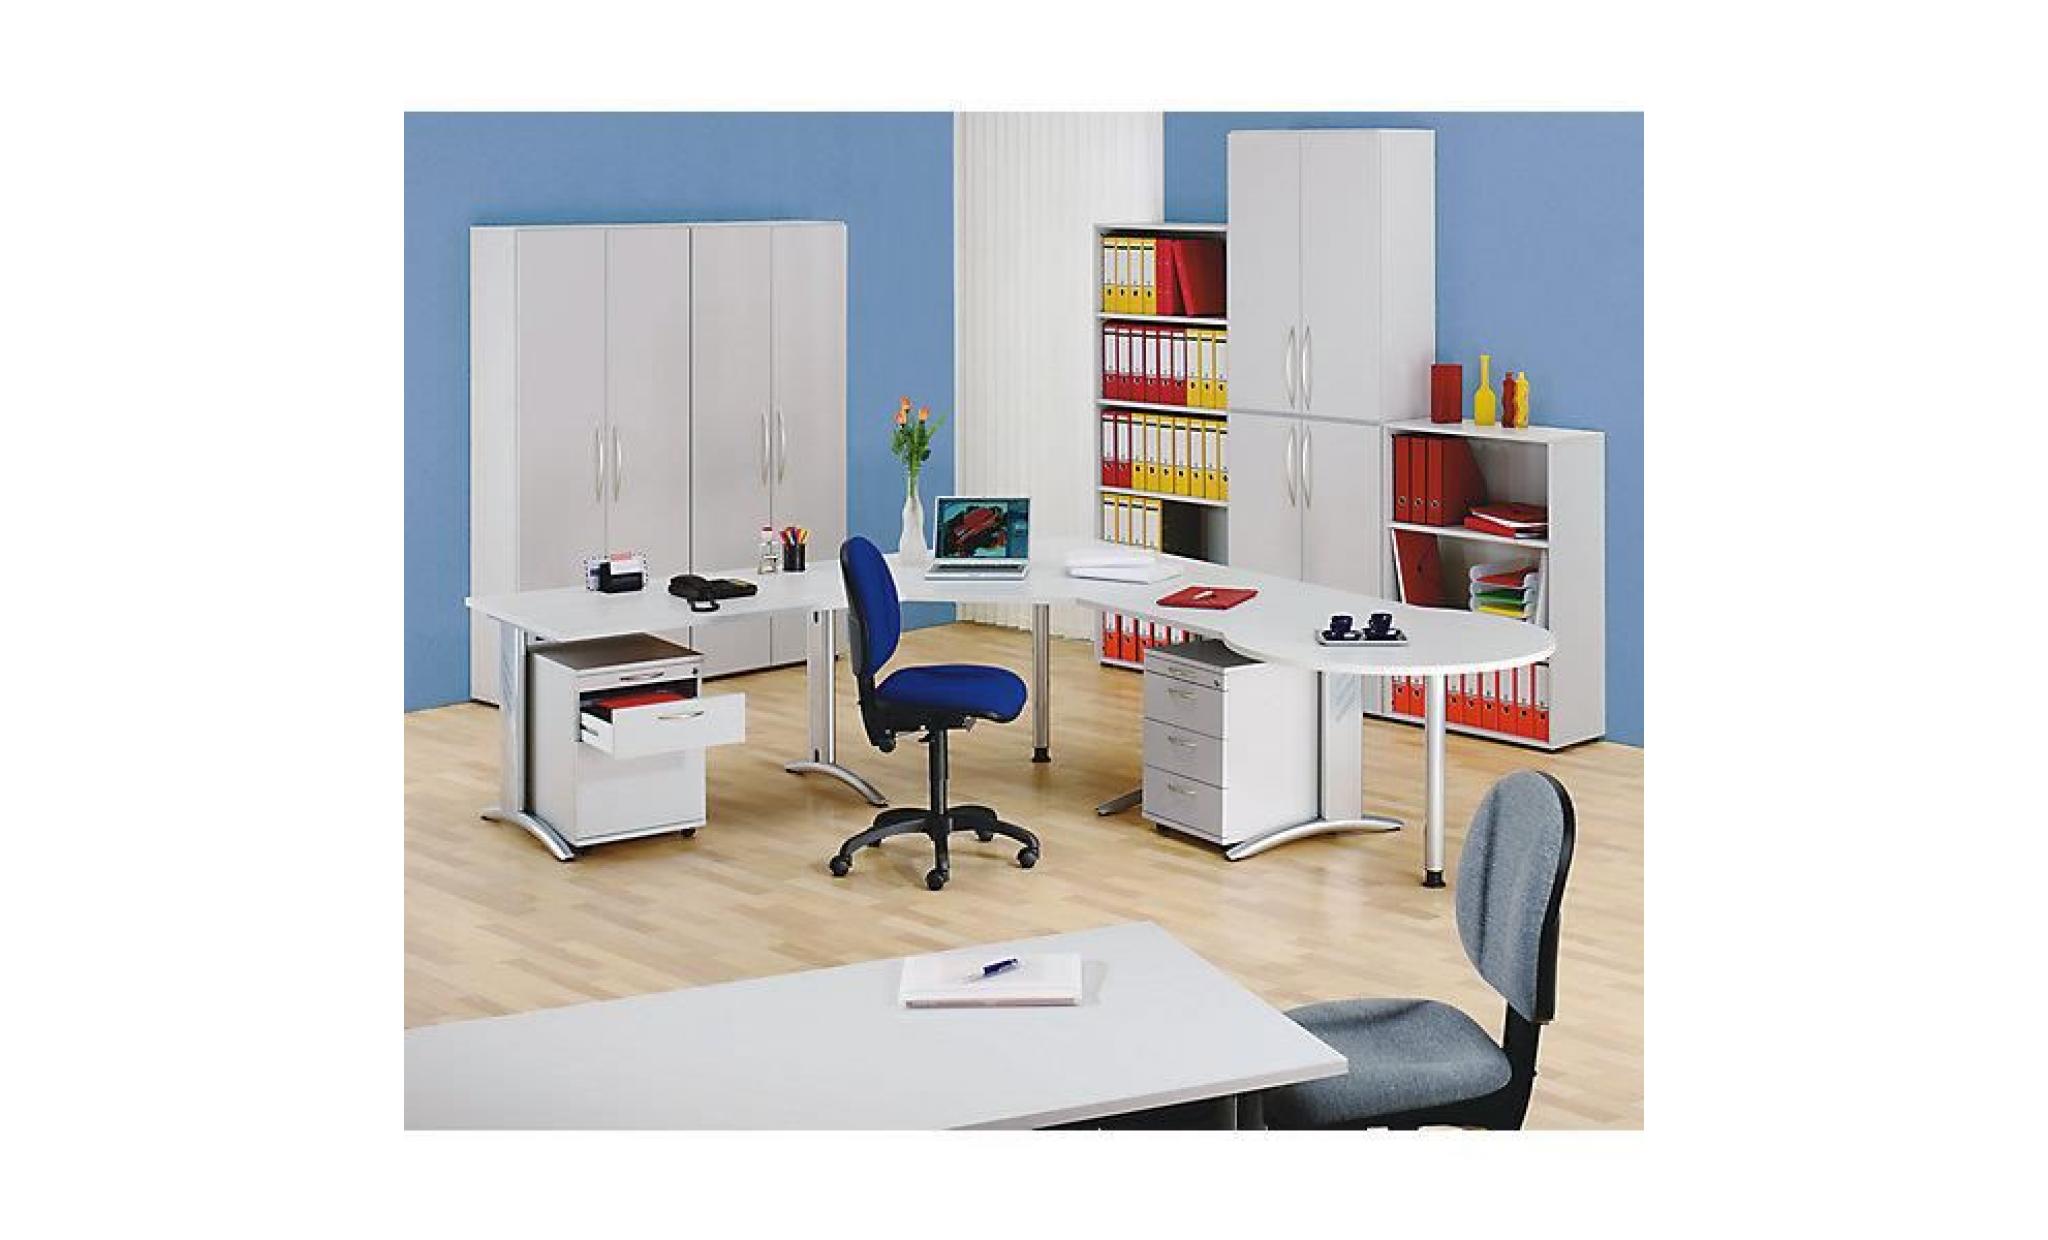 bianca armoire de bureau   h x l x p 1144 x 800 x 346 mm, 3 hauteurs de classeurs   façon hêtre   armoire armoire de bureau armoire